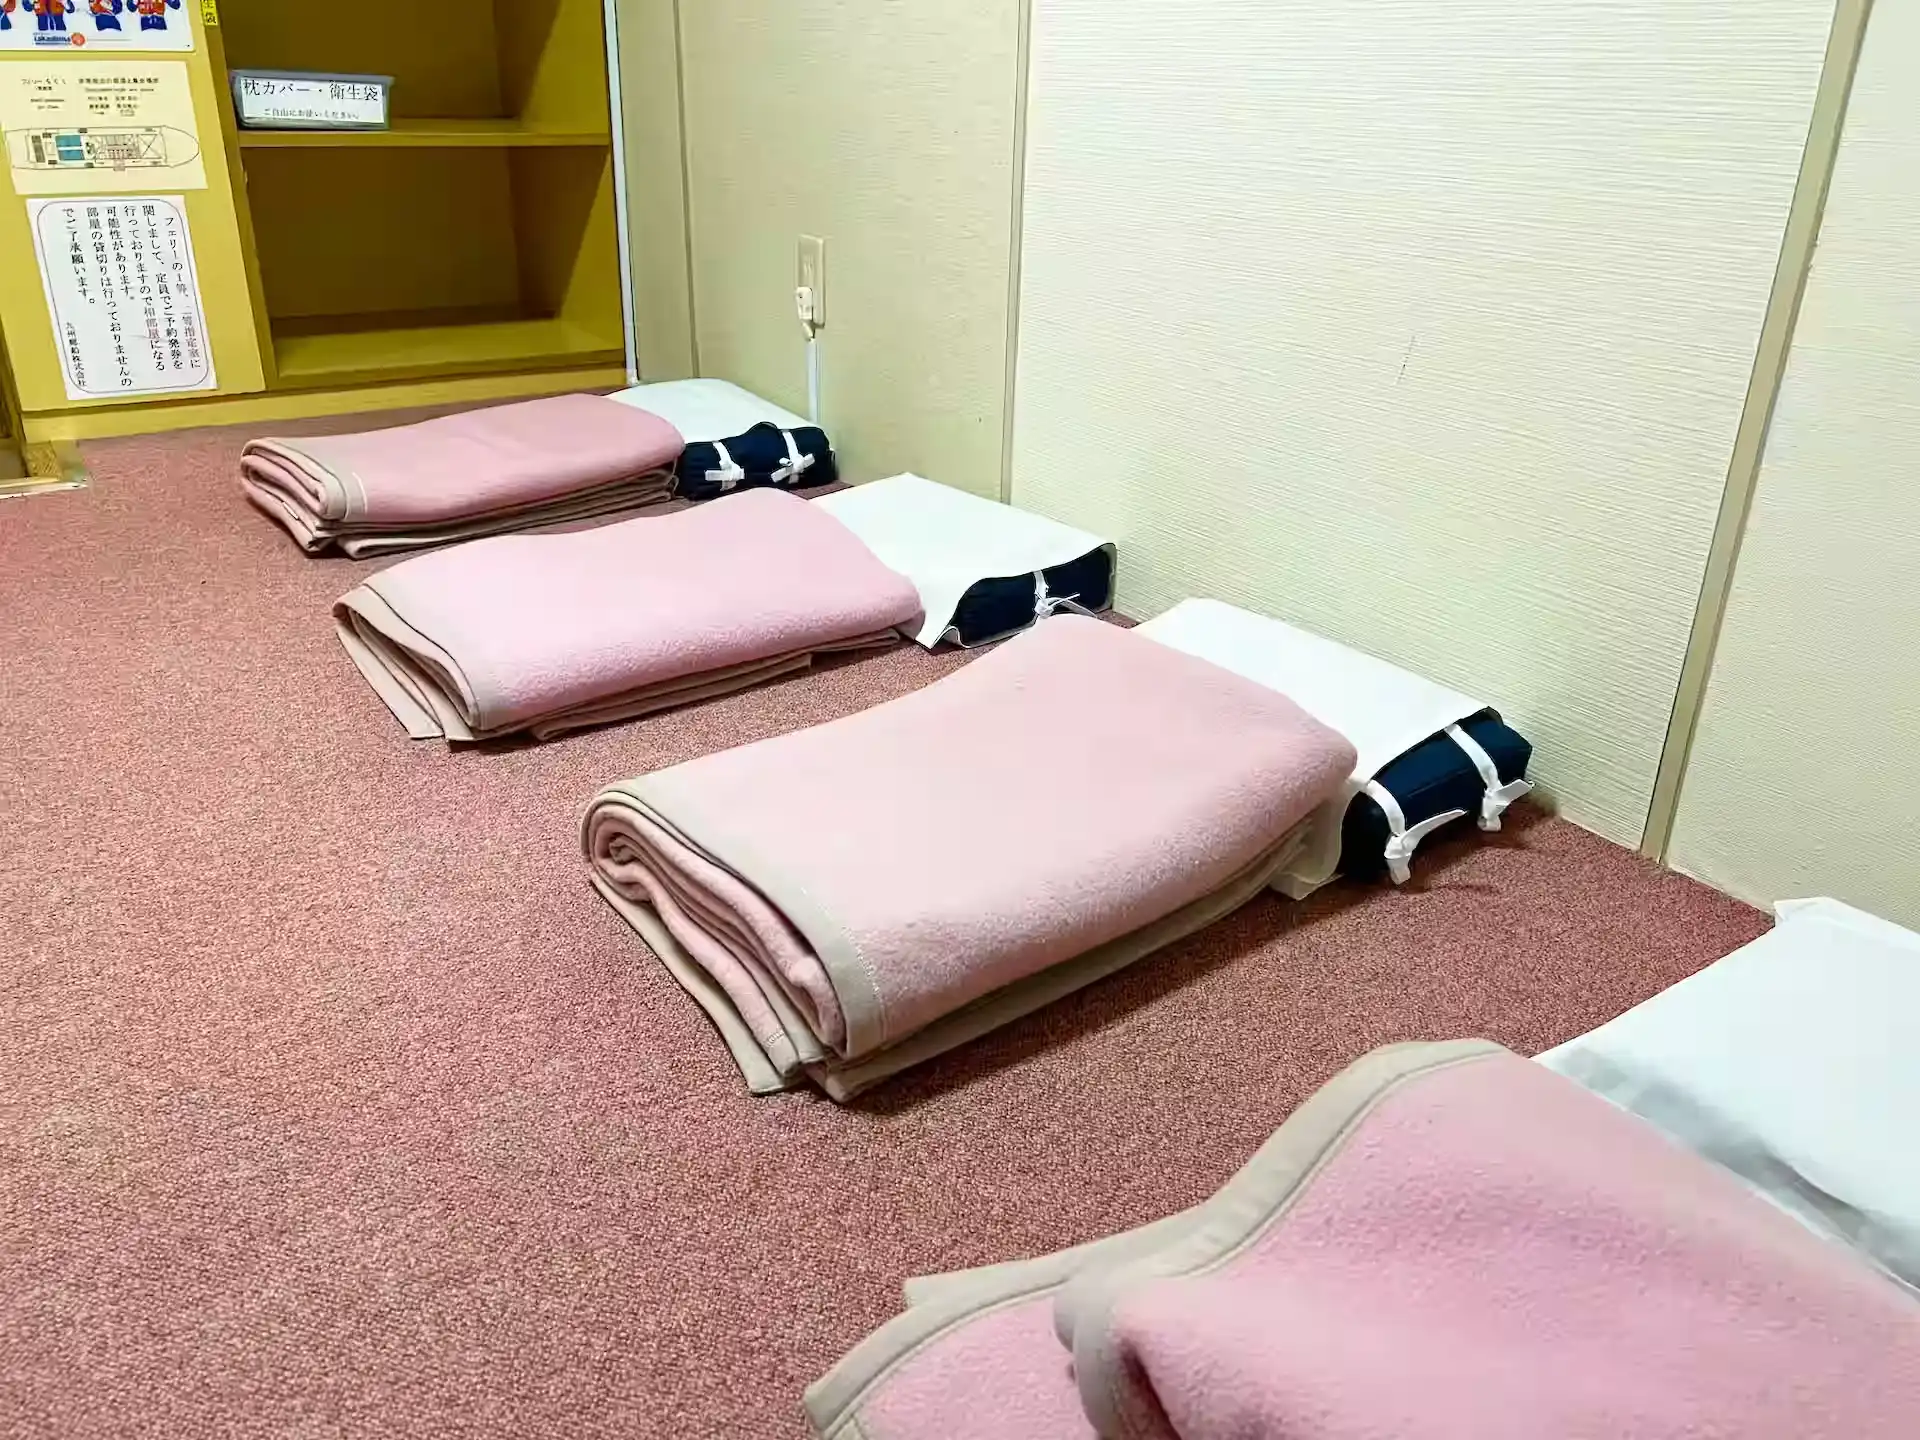 九州郵船フェリーちくし船内の1等室客室の枕と毛布